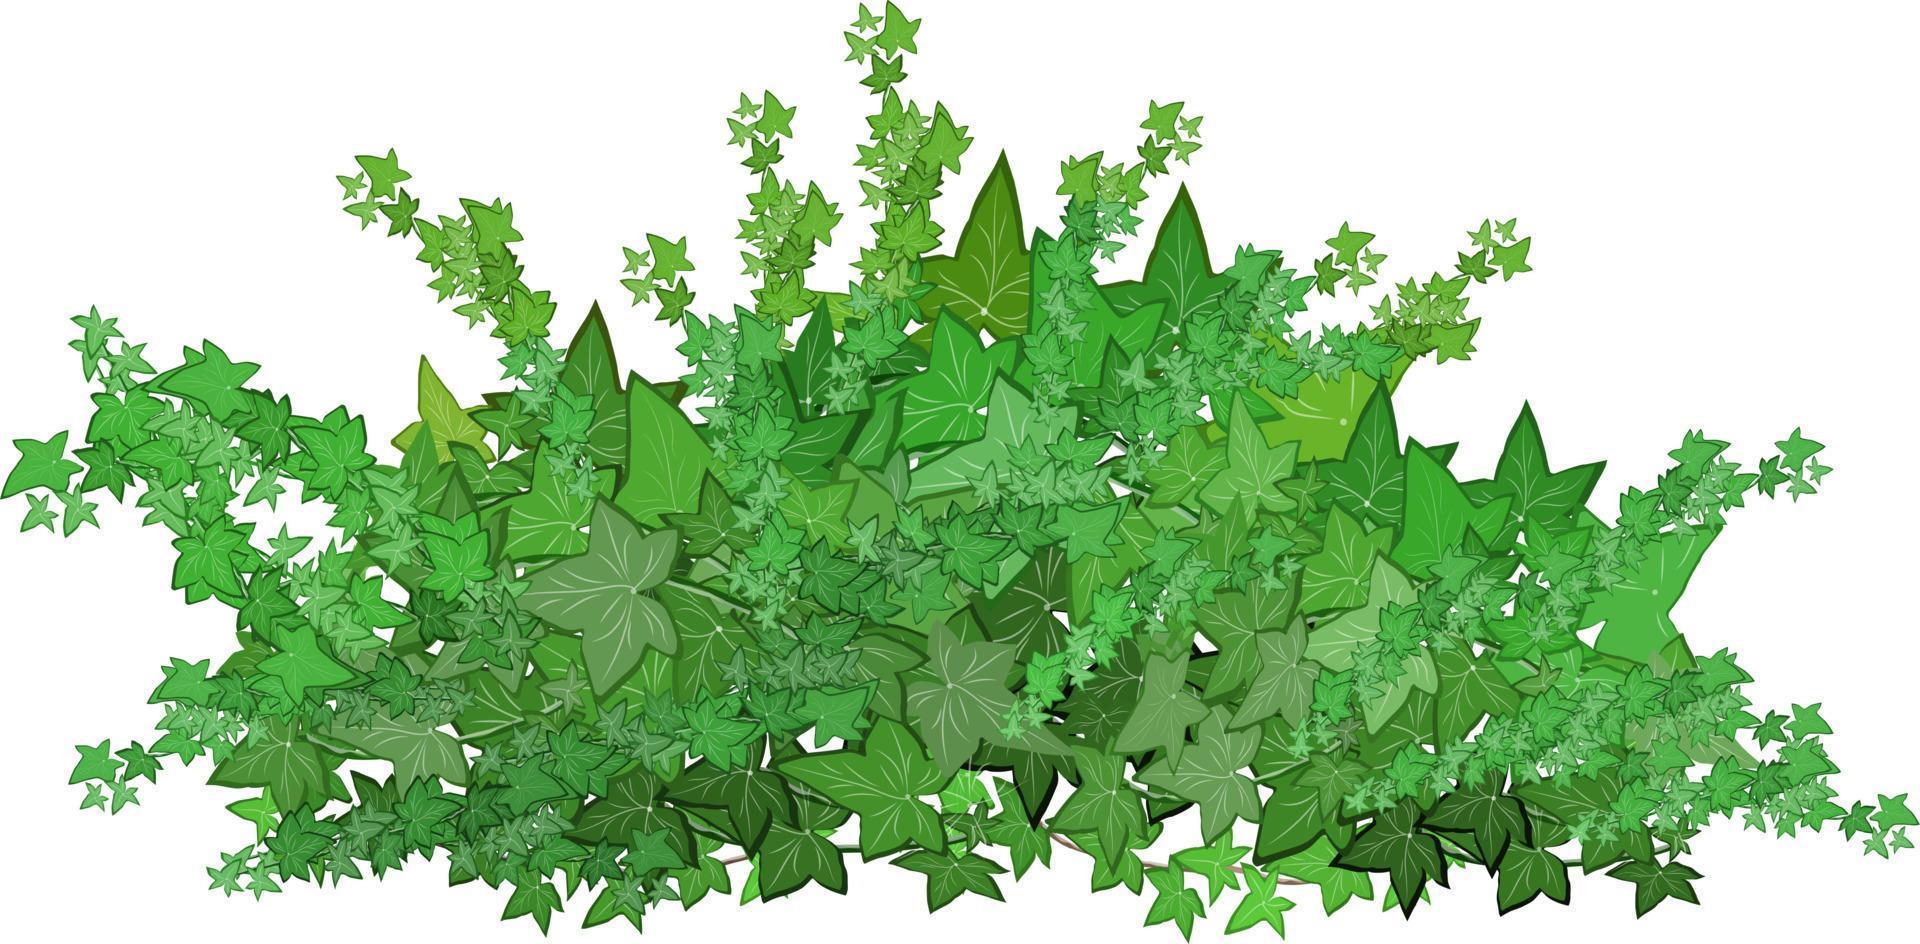 satz von dekorativen grünen pflanzen in form einer hecke. realistischer gartenstrauch, saisonaler busch, buchsbaum, baumkronenbuschlaub. zur dekoration eines parks, eines gartens oder eines grünen zauns. vektor